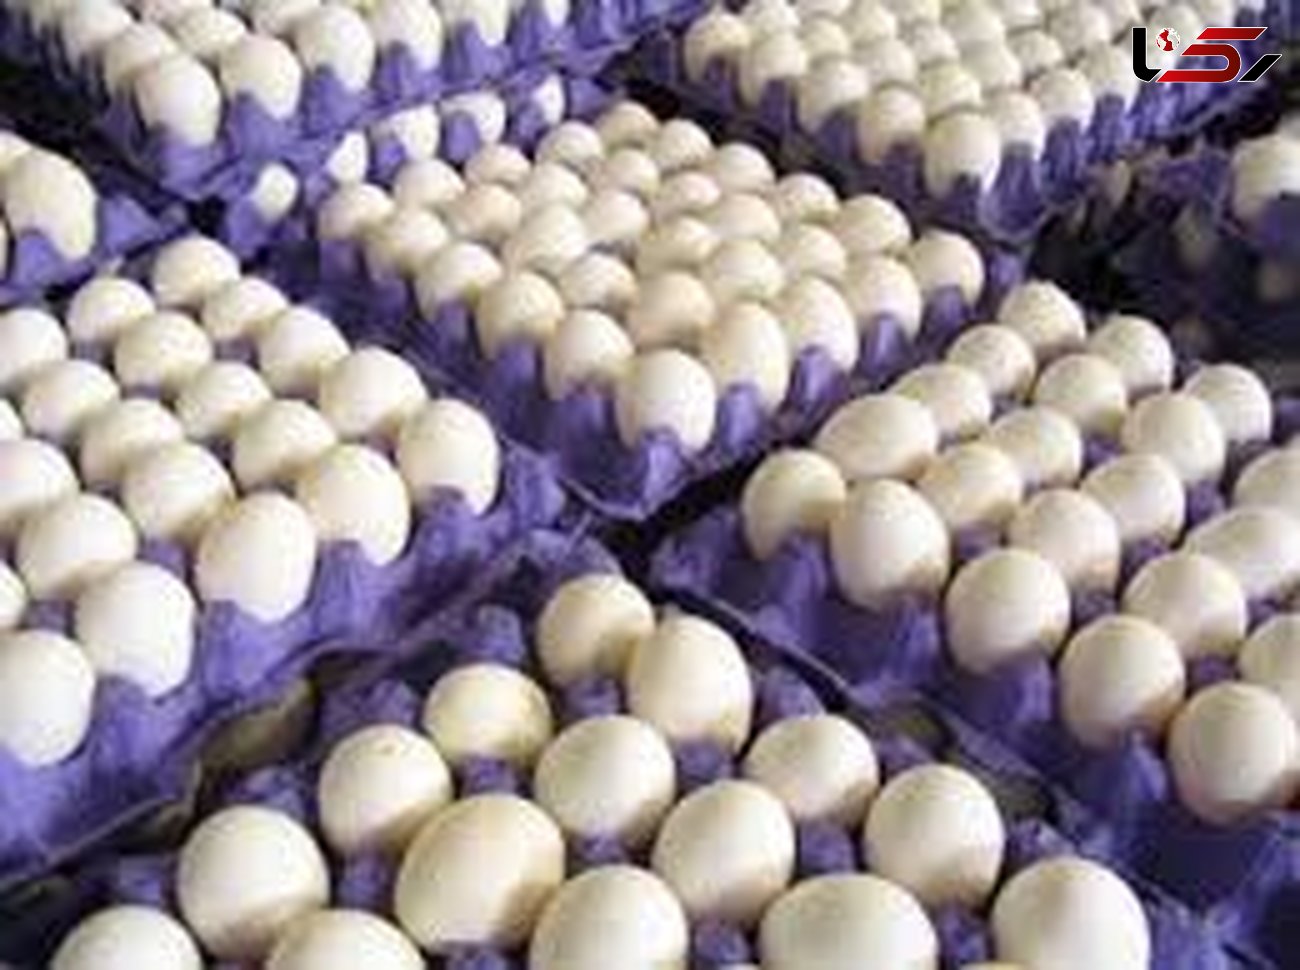 نام تخم مرغ های فاسد و غیر بهداشتی اعلام شد /نخرید مصرف نکنید